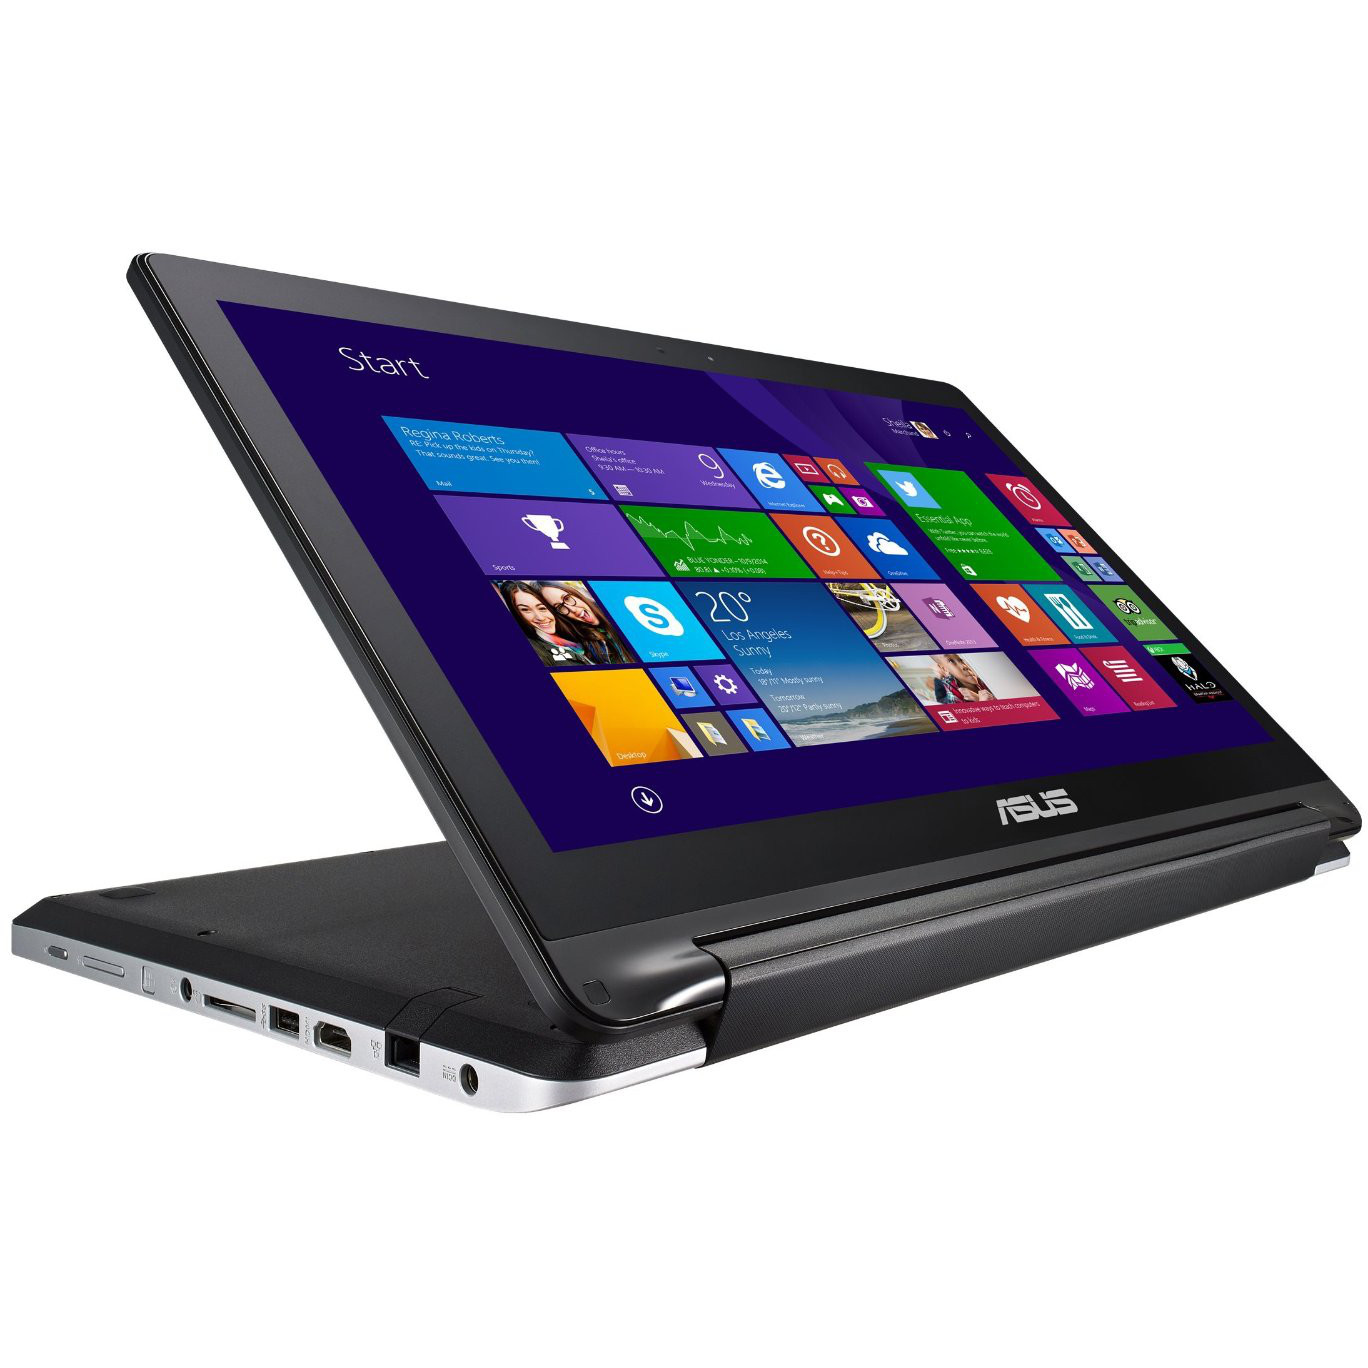  Laptop 2 in 1 Asus TP550LJ-DN015H Intel Core i3-5010U, 4GB DDR3, HDD 500GB, nVidia GeForce GT 920M 2GB, W8 